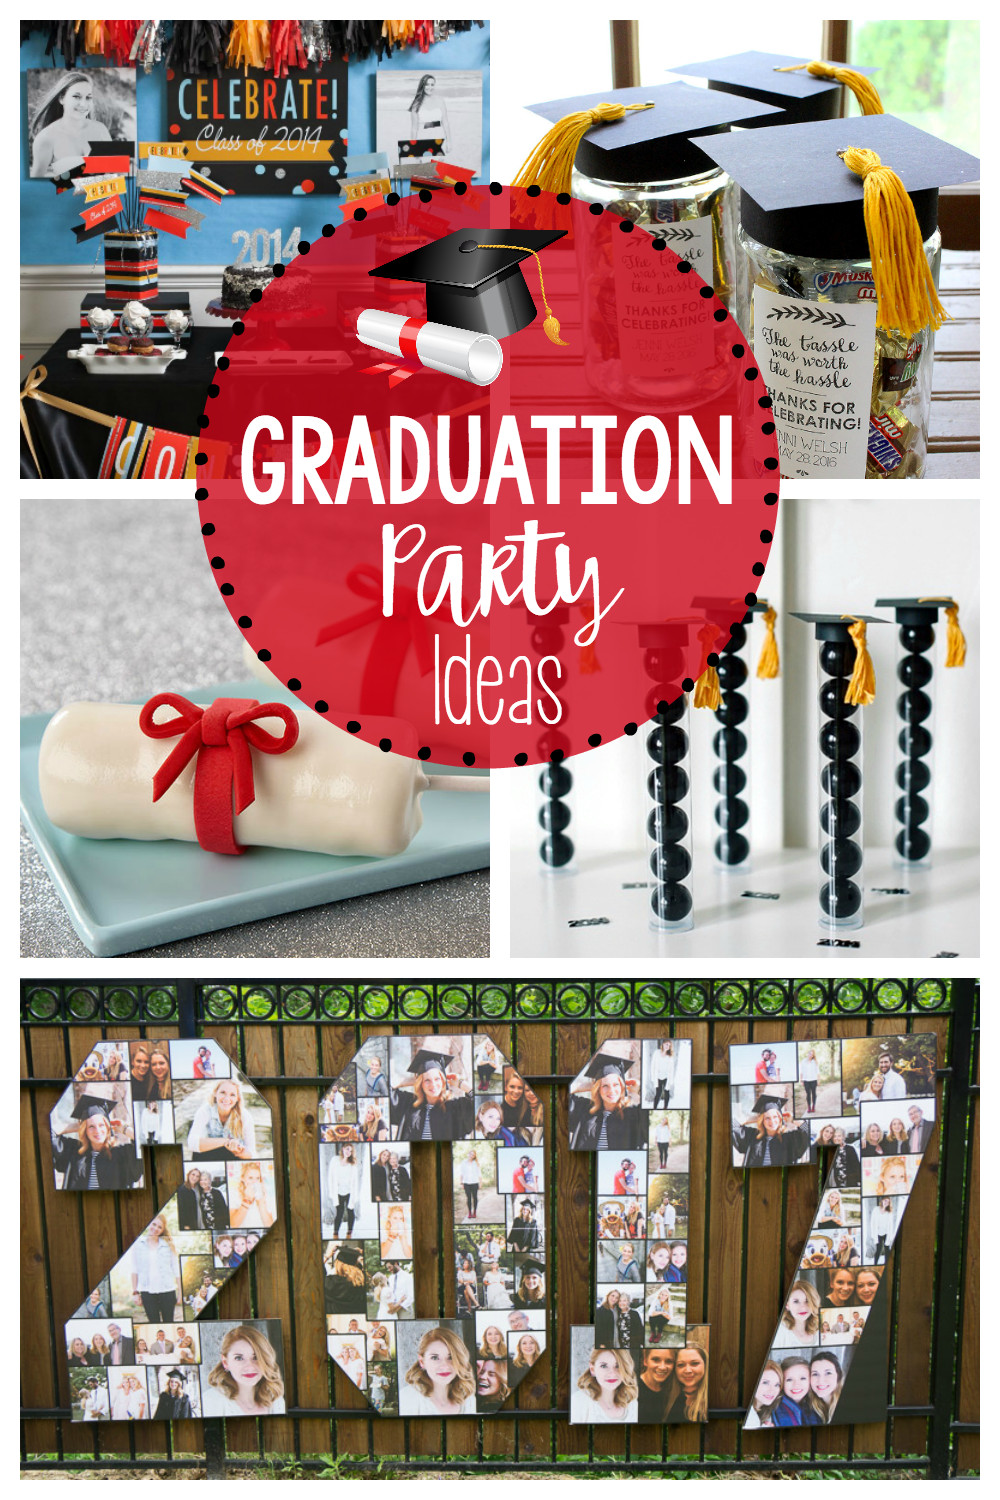 Graduation Party Ideas At A Beach'
 25 Fun Graduation Party Ideas – Fun Squared